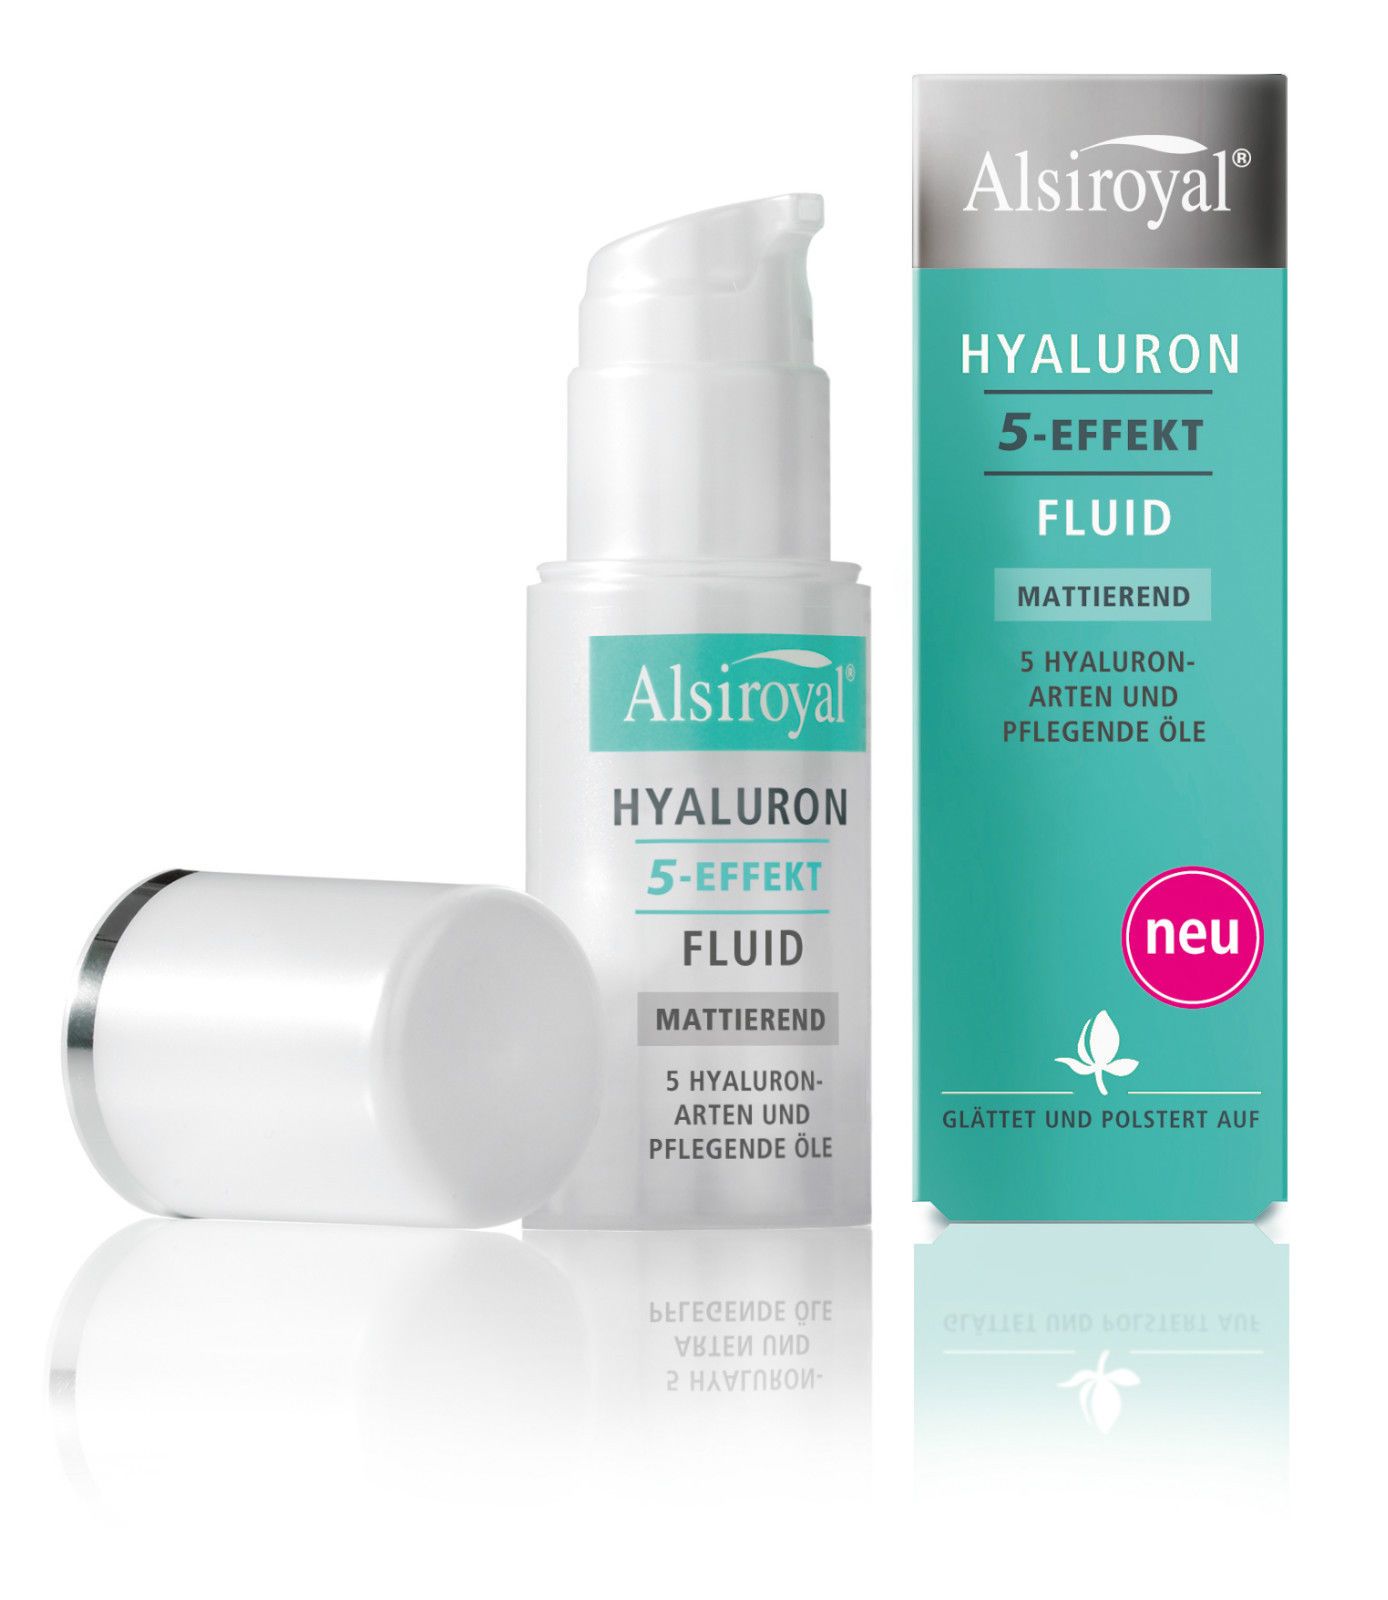 Alsiroyal Hyaluron 5-Effekt Fluid